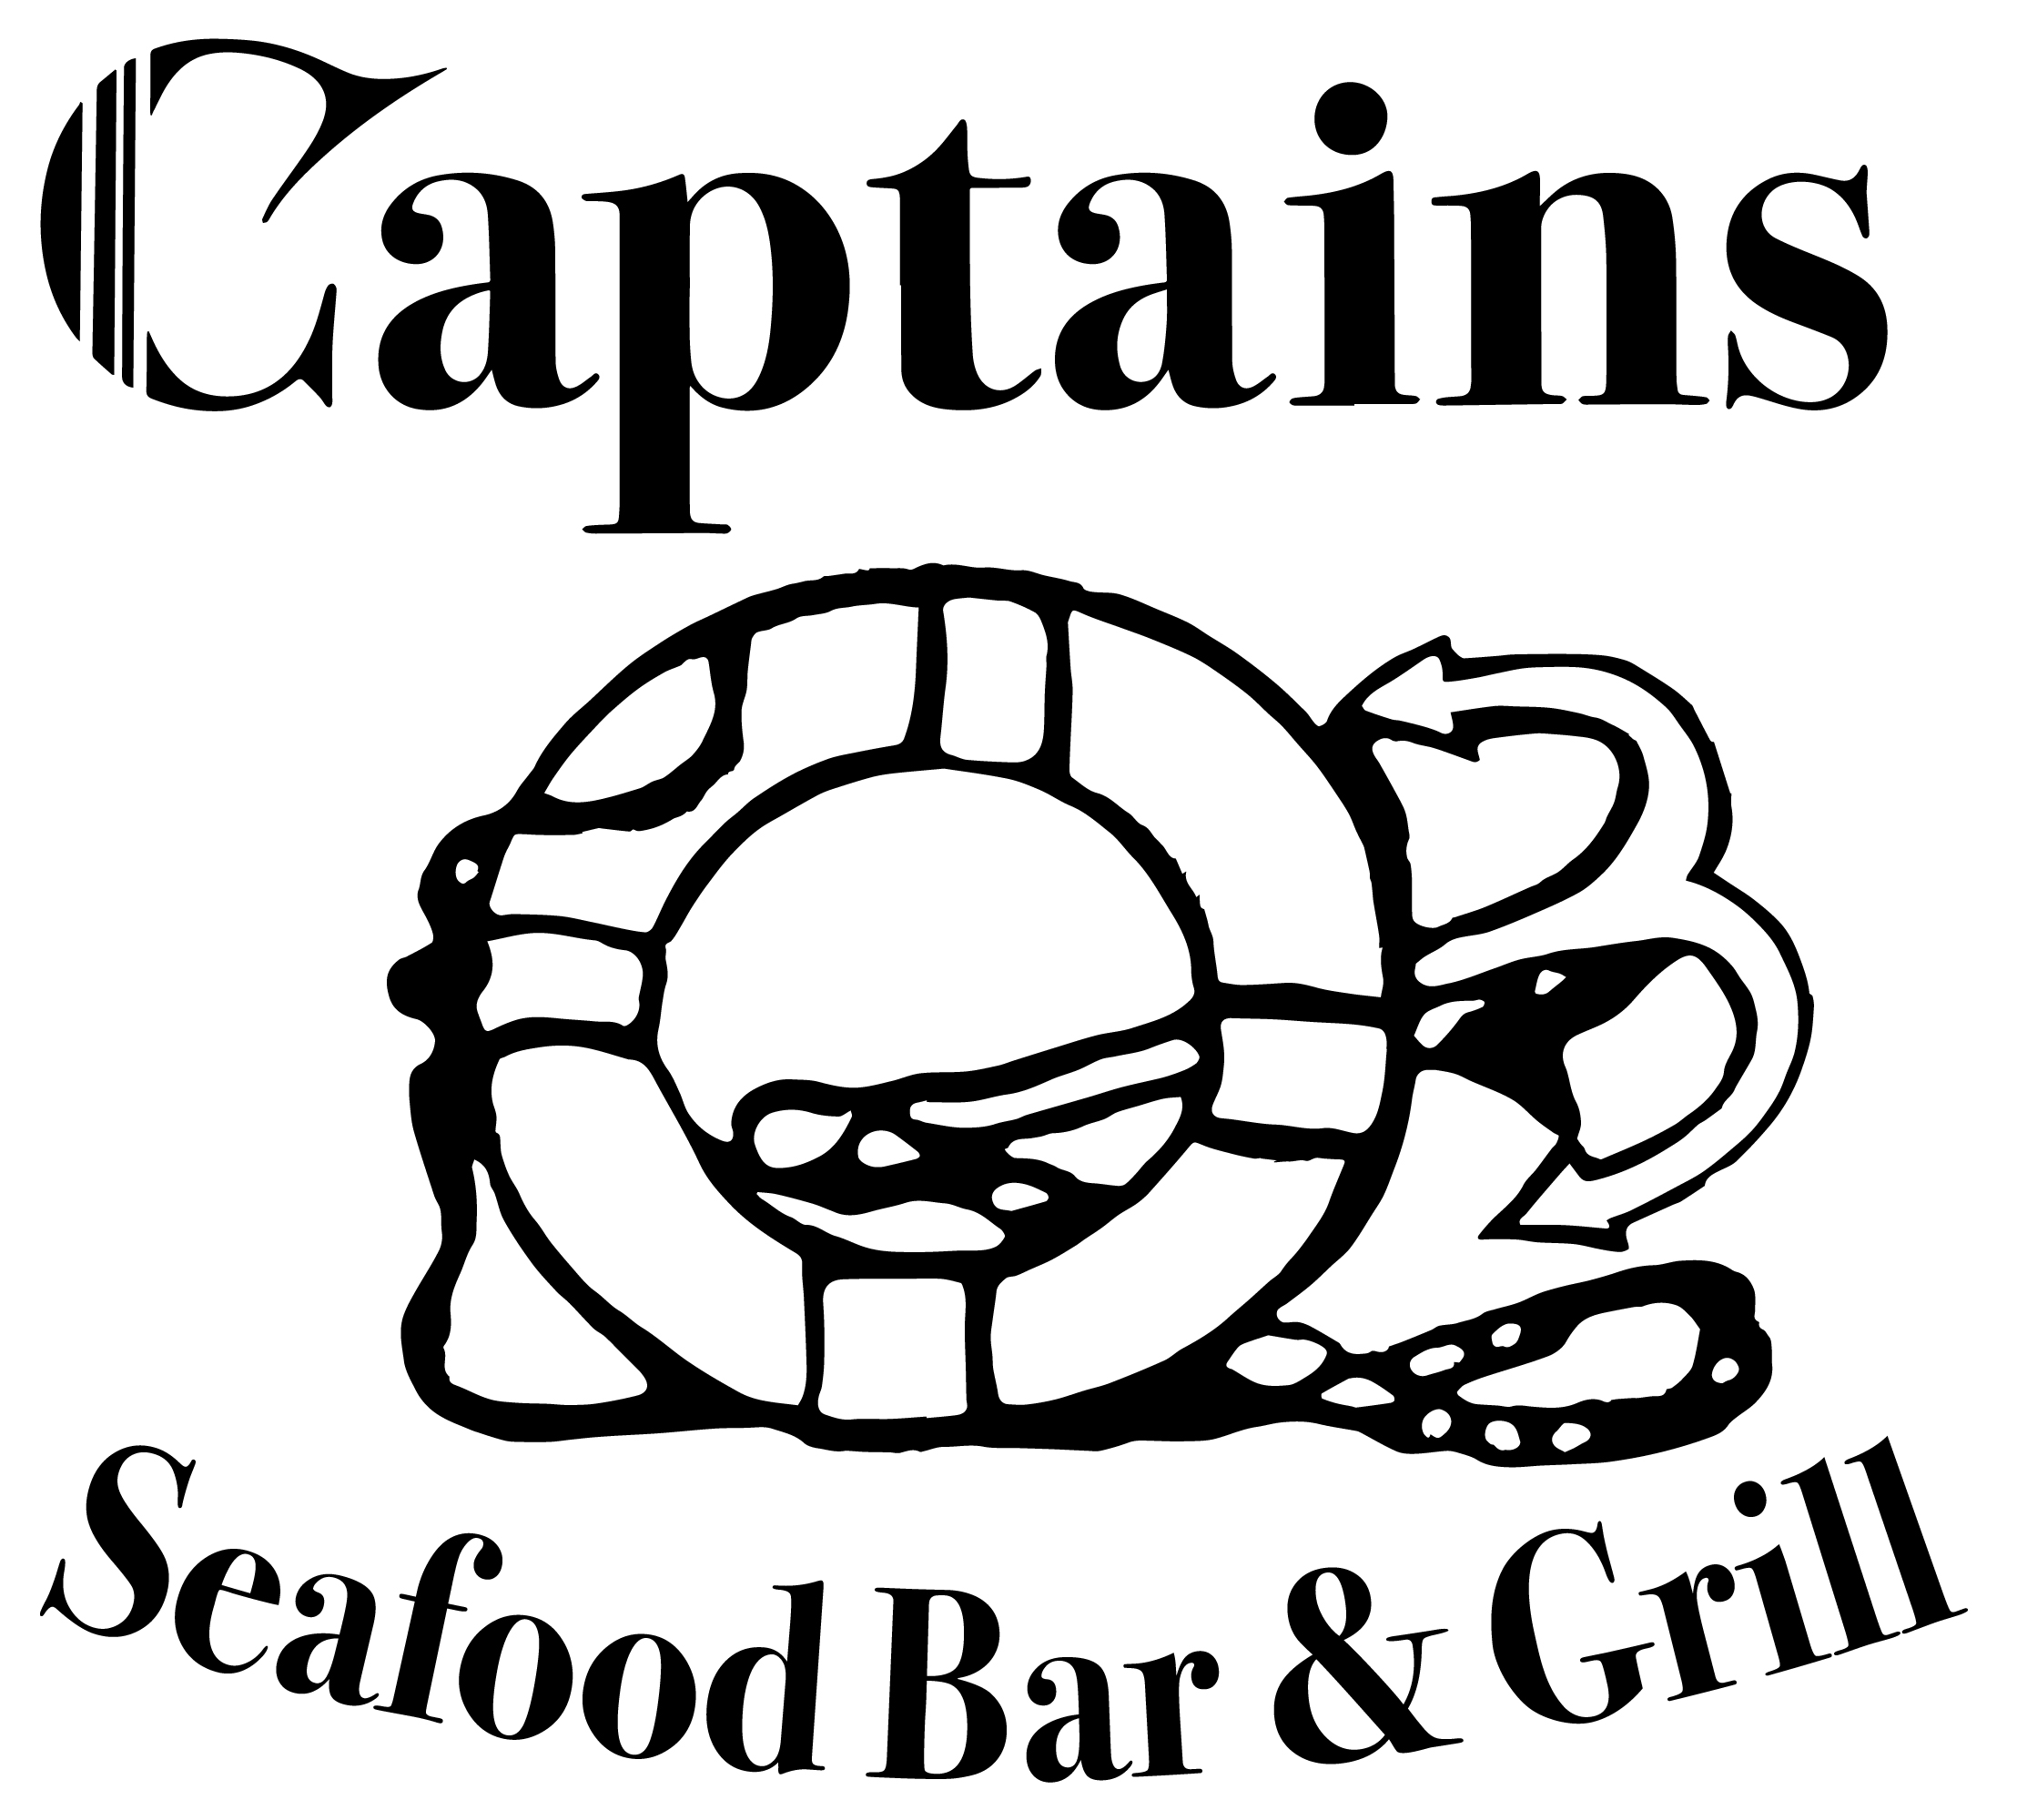 Captain Scott’s Restaurant patio